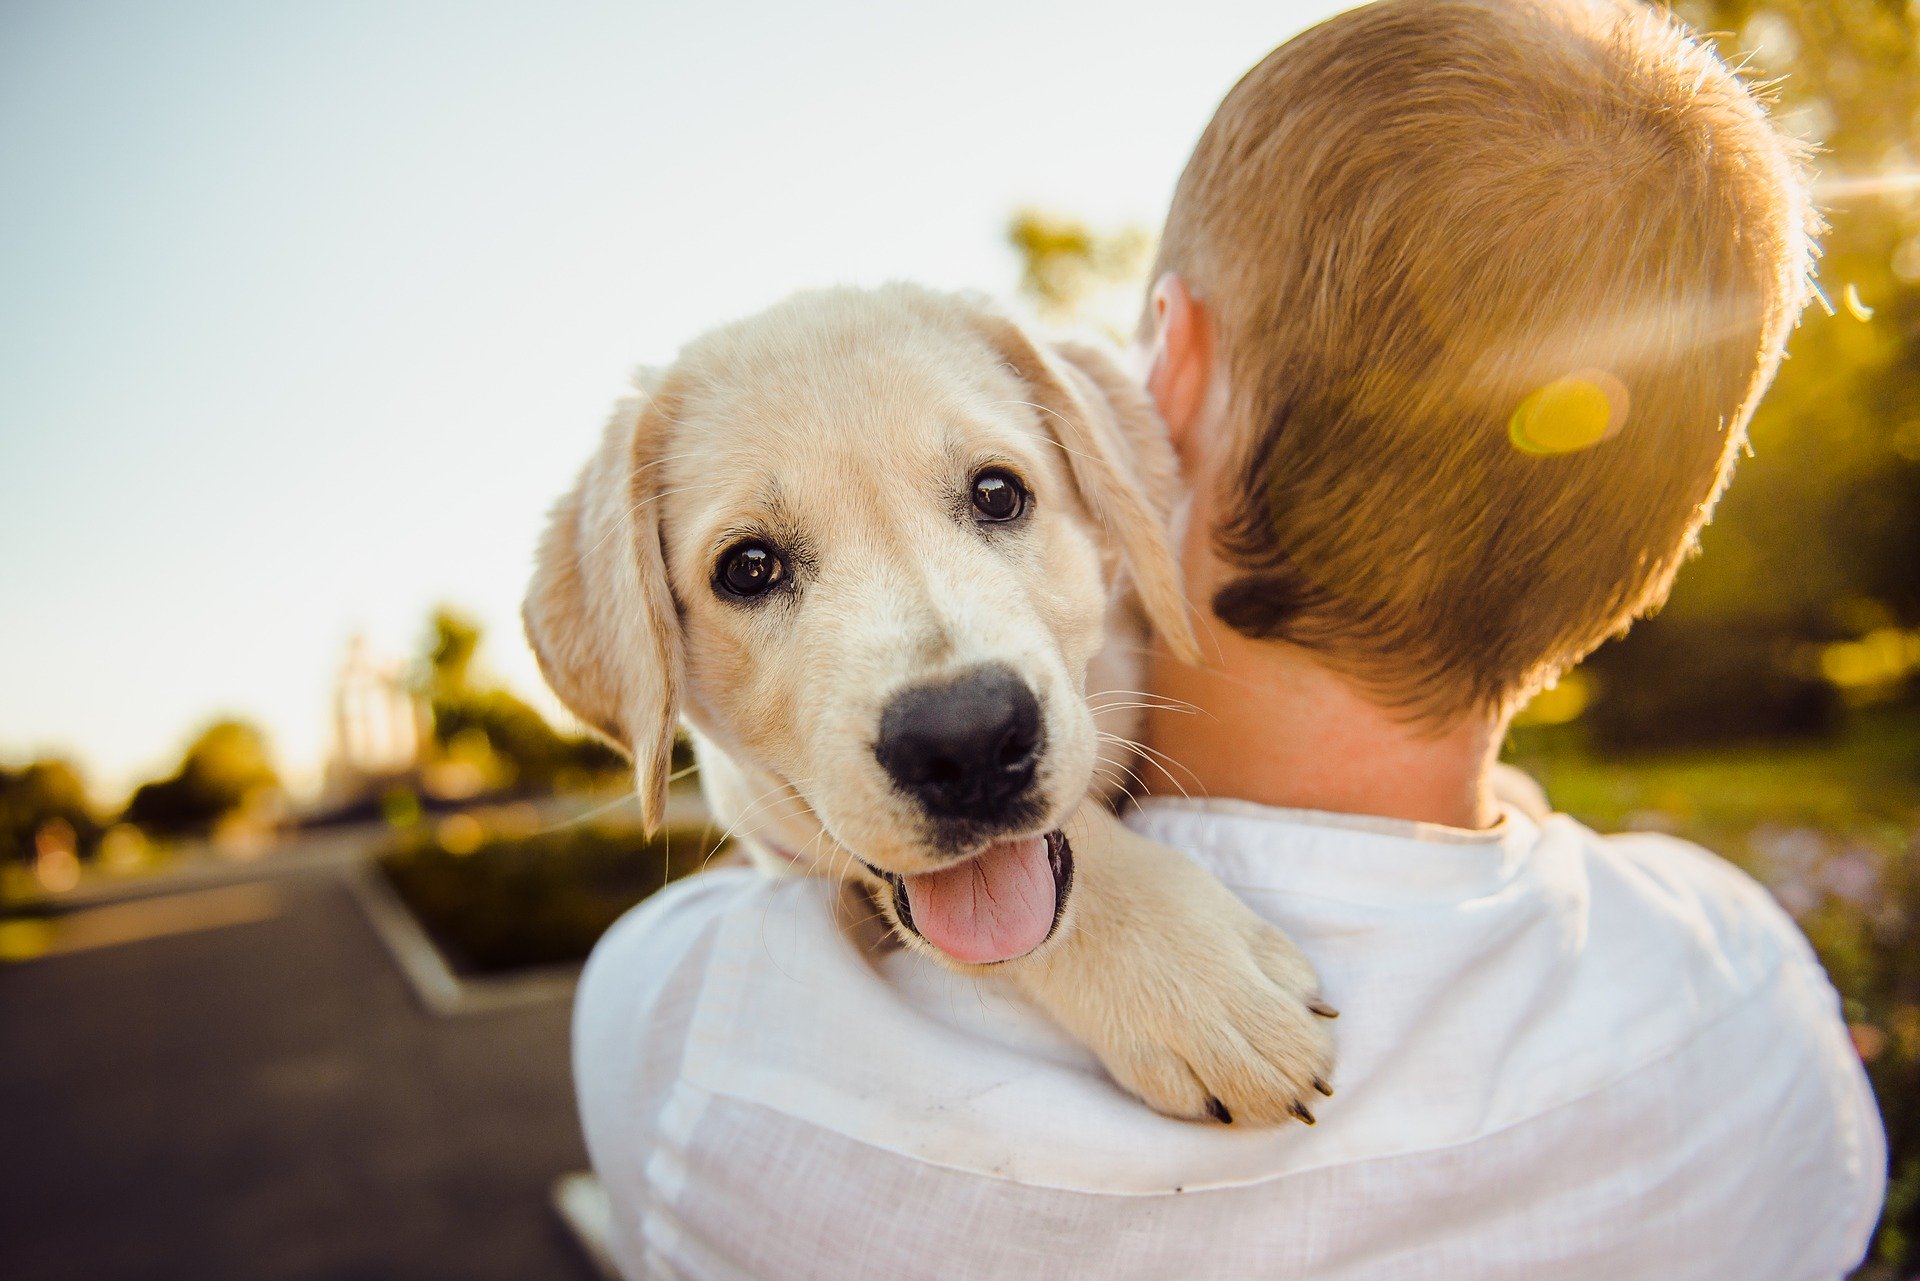 Výchova psa je proces, ktorý si vyžaduje dôslednosť a spoluprácu medzi všetkými členmi rodiny.